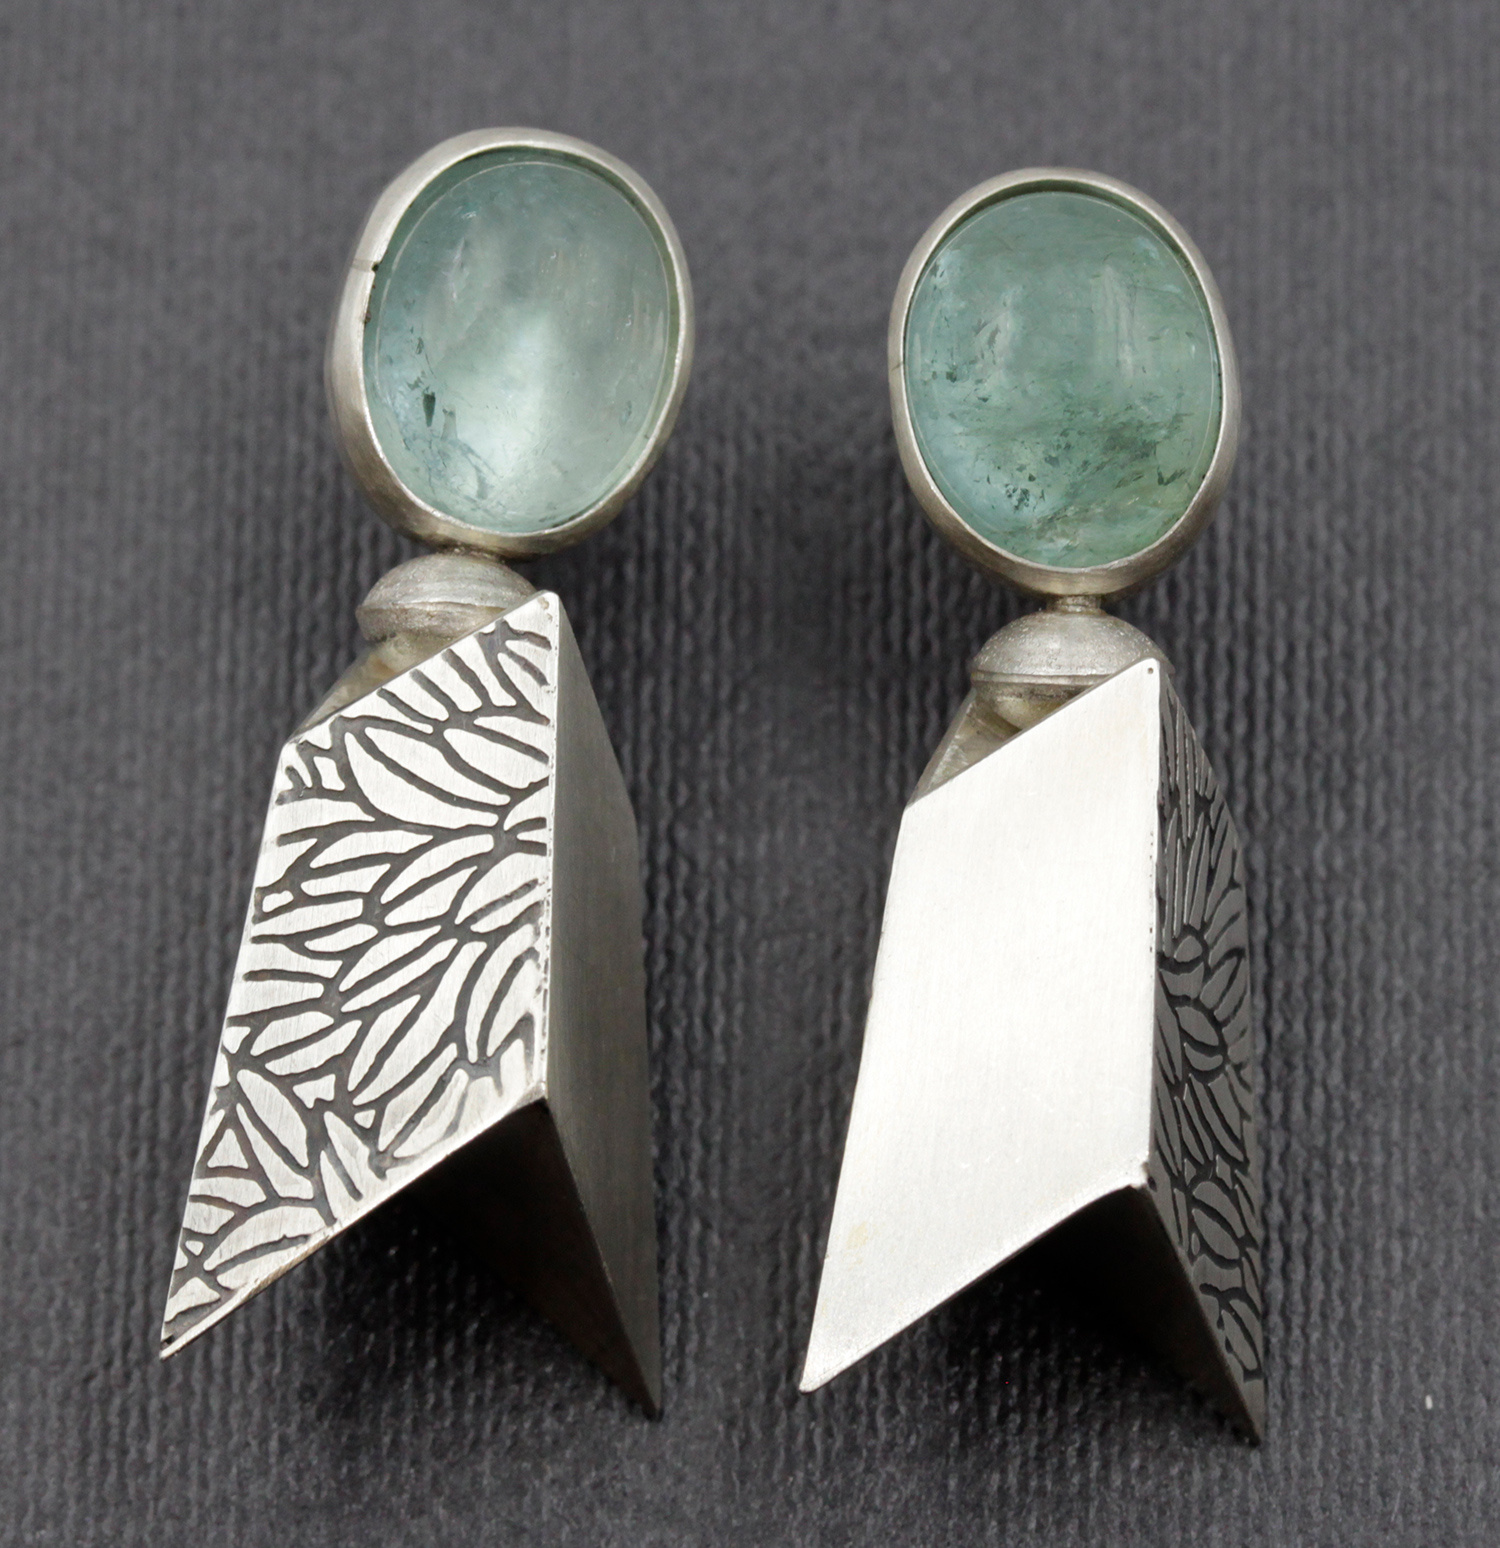 Earrings by Jill Newbrook